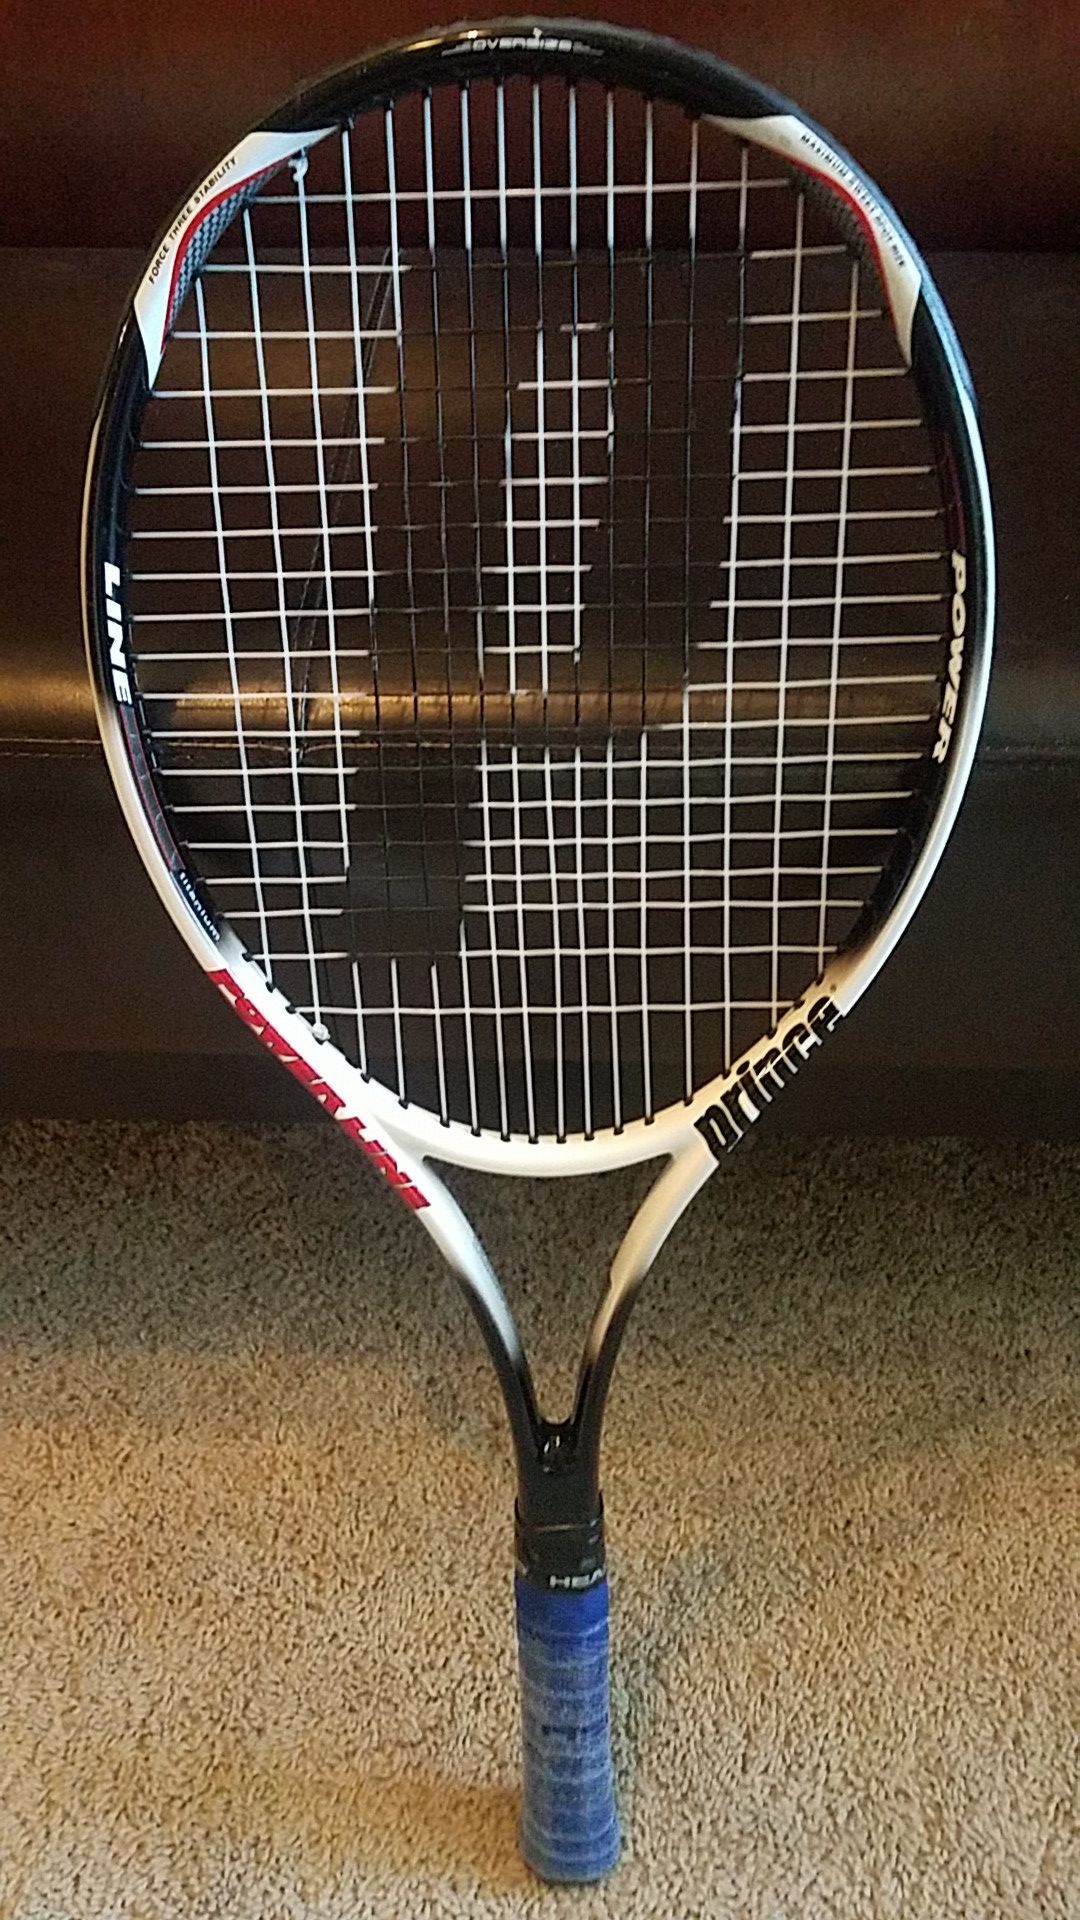 Tennis racket Prince Powerline.